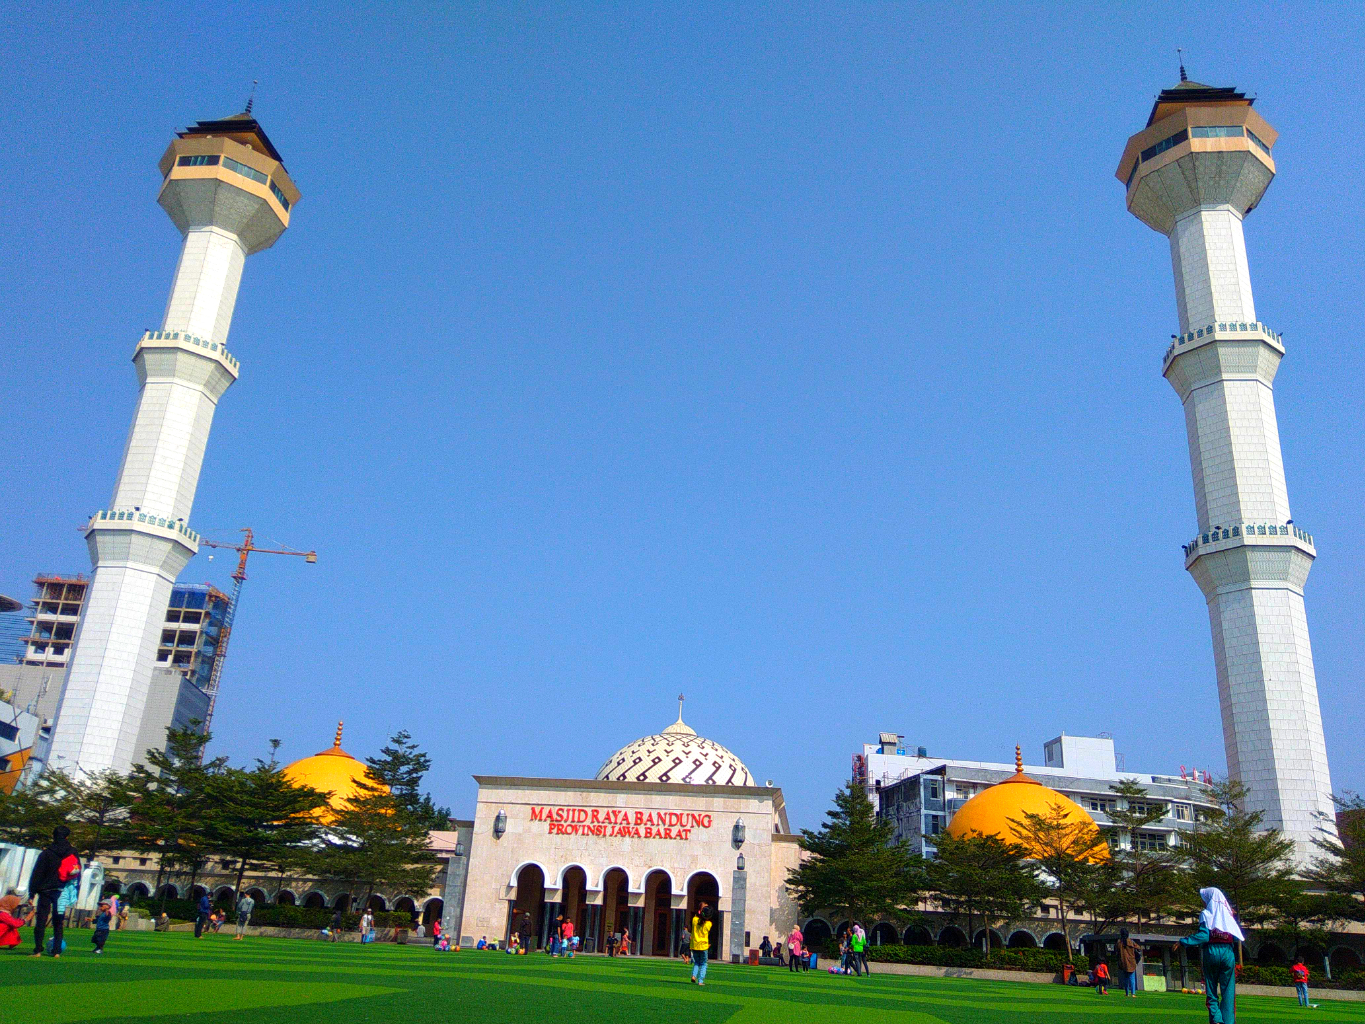 Melihat Kota Bandung  dari Menara Masjid  Raya  Sifathlist